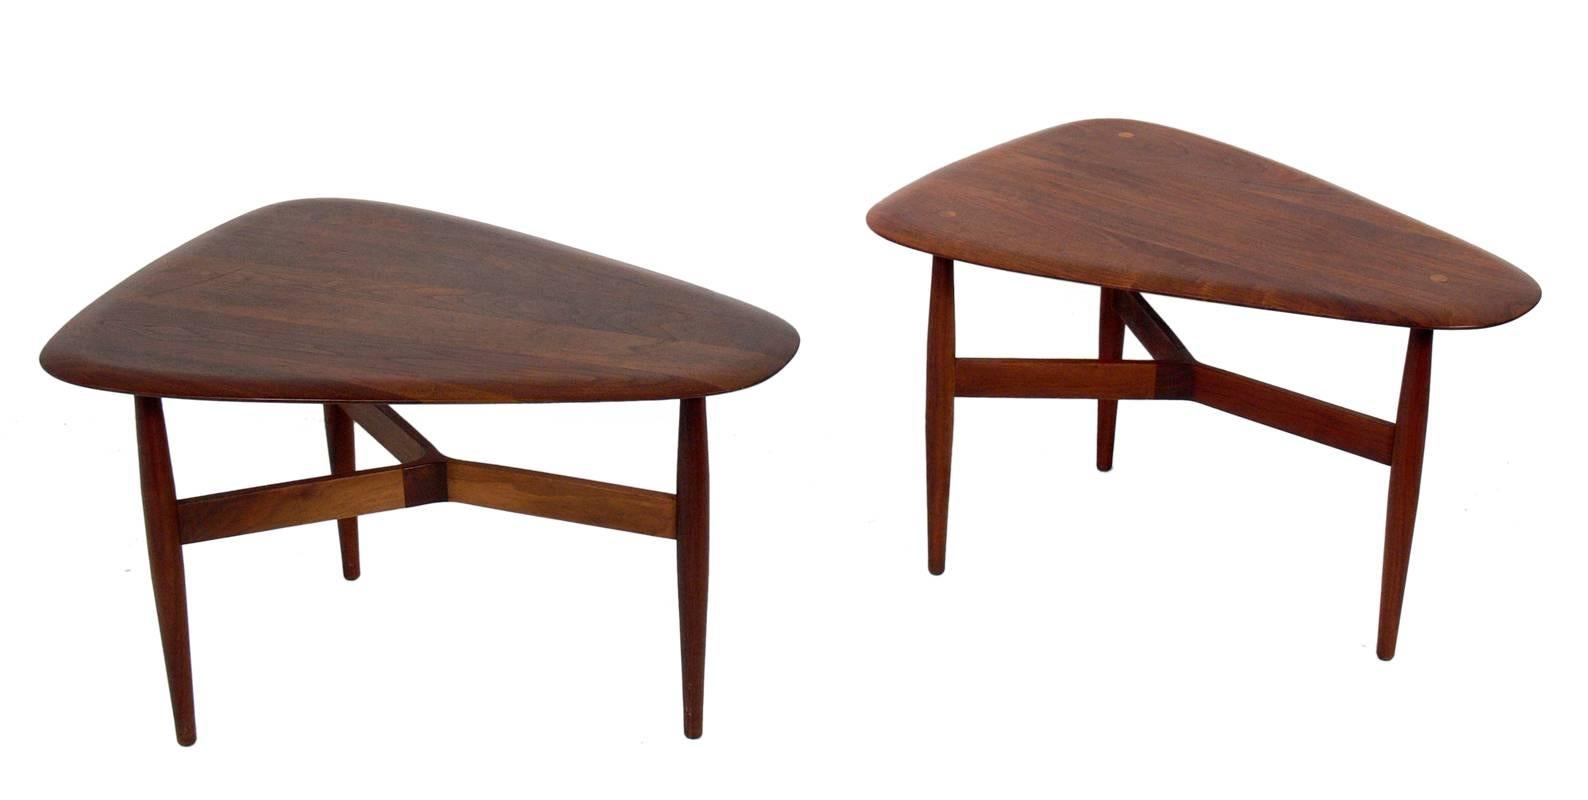 Tables d'appoint ou tables de bout sculpturales en teck, conçues par Illum Wikkelso et Johannes Aasbjerg, Danemark, vers les années 1960. Elles ont une taille polyvalente et peuvent être utilisées comme tables d'appoint ou tables de nuit. Ils sont